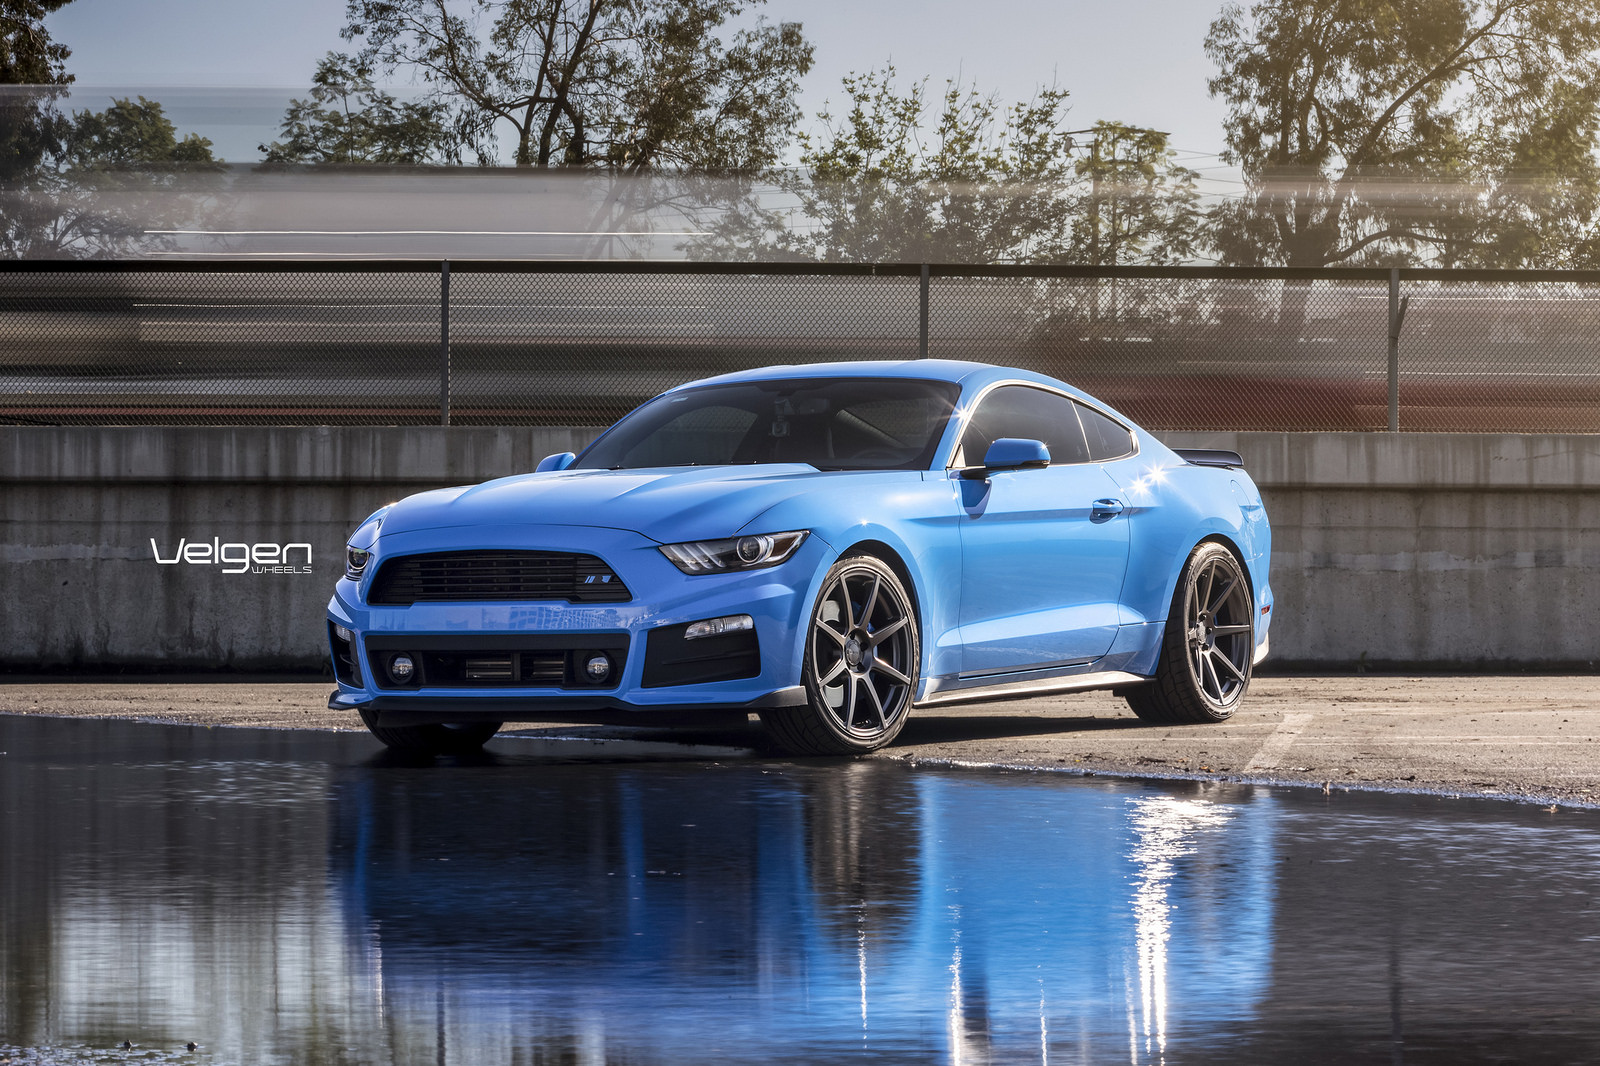 2017 Grabber Blue S550 Velgen Wheels | 2015+ S550 Mustang Forum (GT, EcoBoost, GT350, GT500